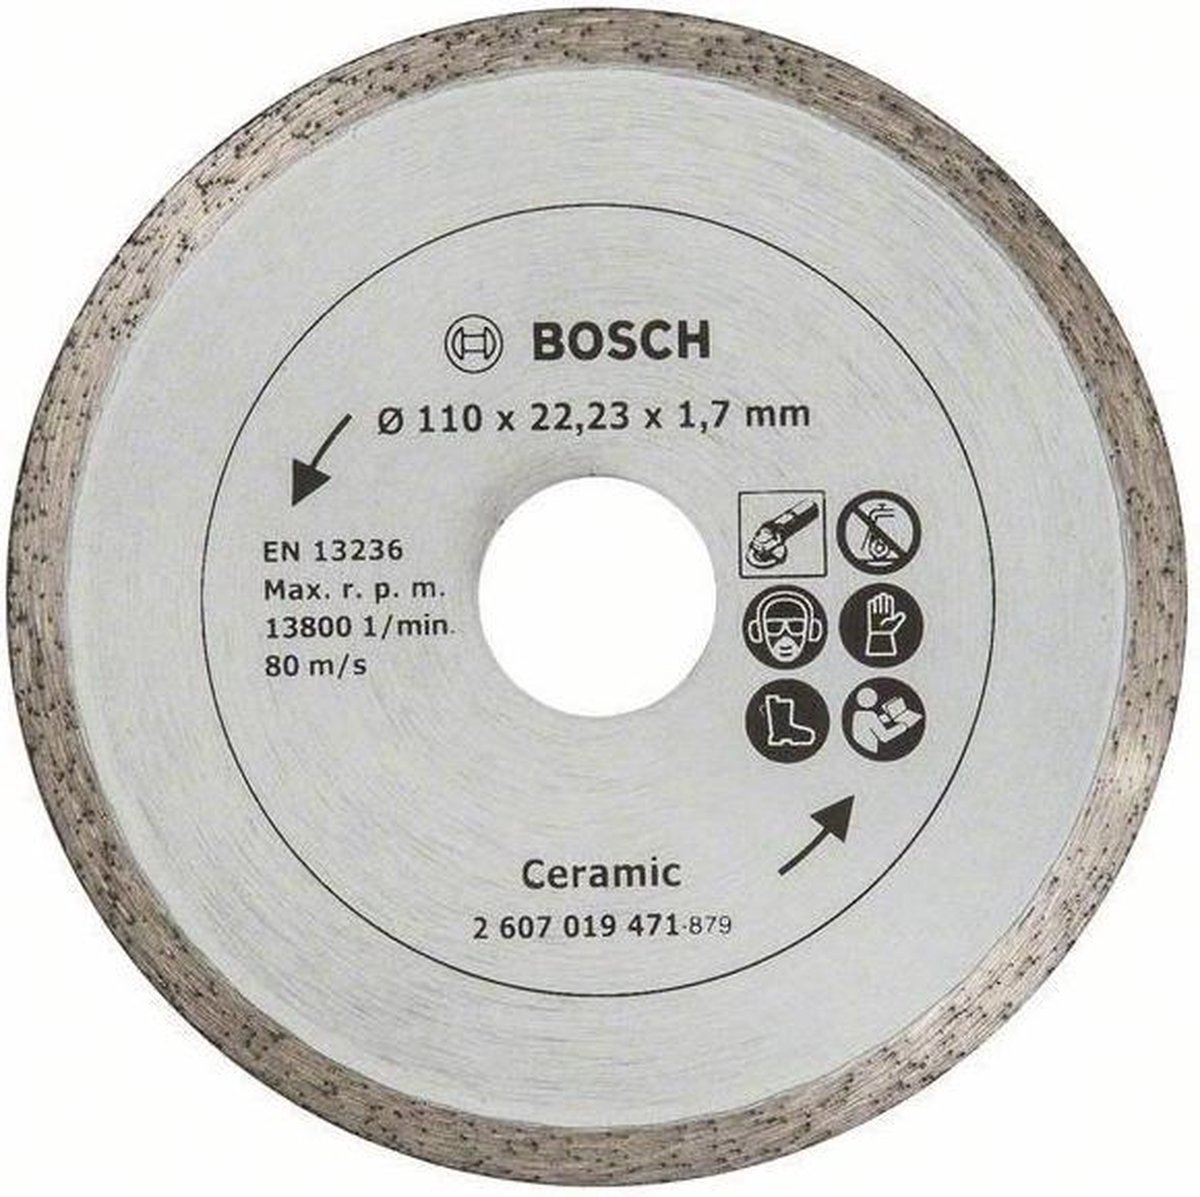 Bosch Diamantdoorslijpschijf voor keramische tegels, 110 mm Ø